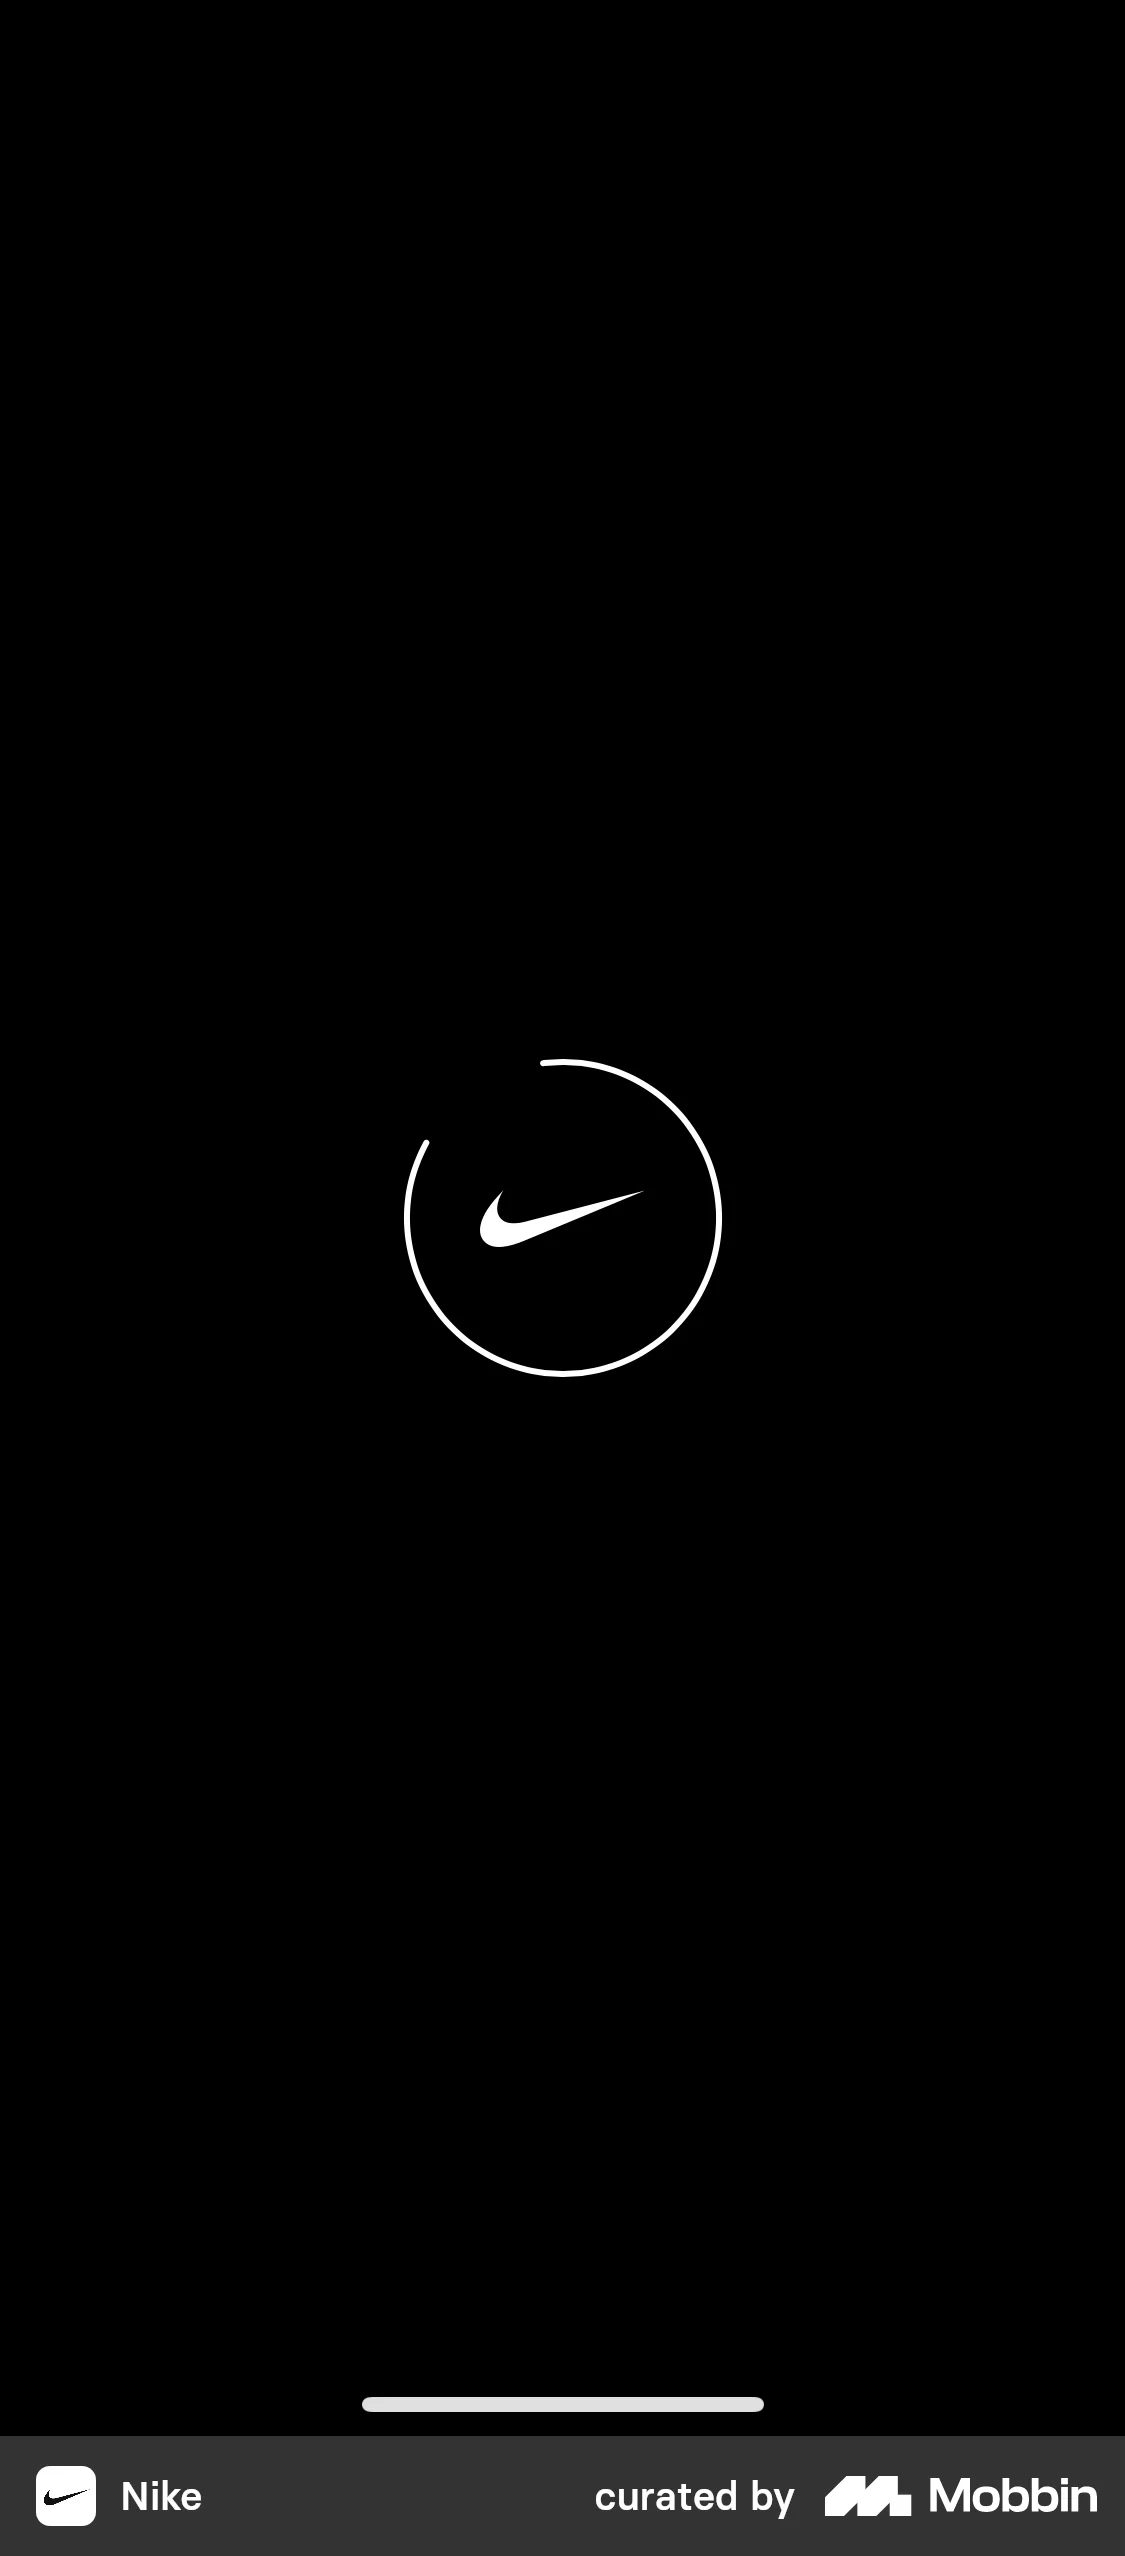 Nike Onboarding screen